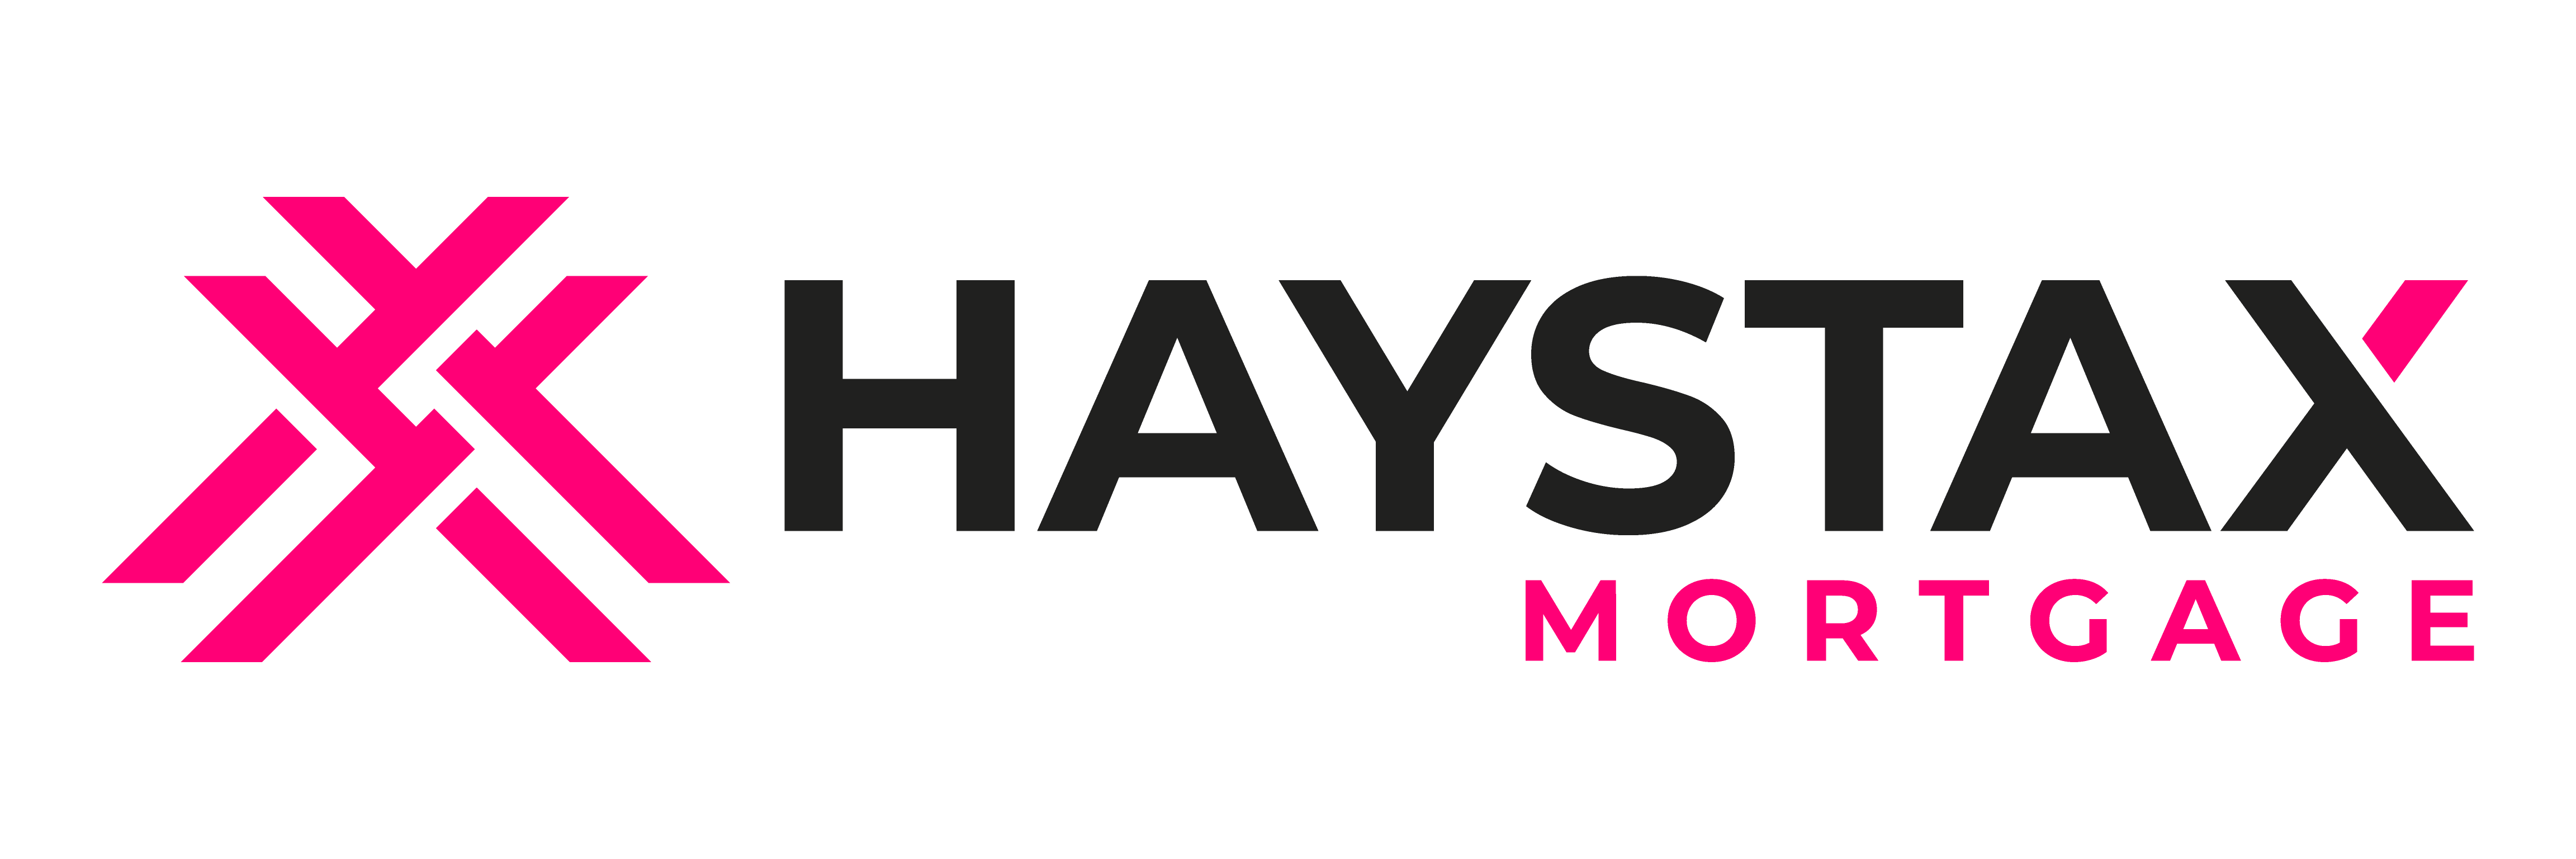 Haystax Mortgage Logo